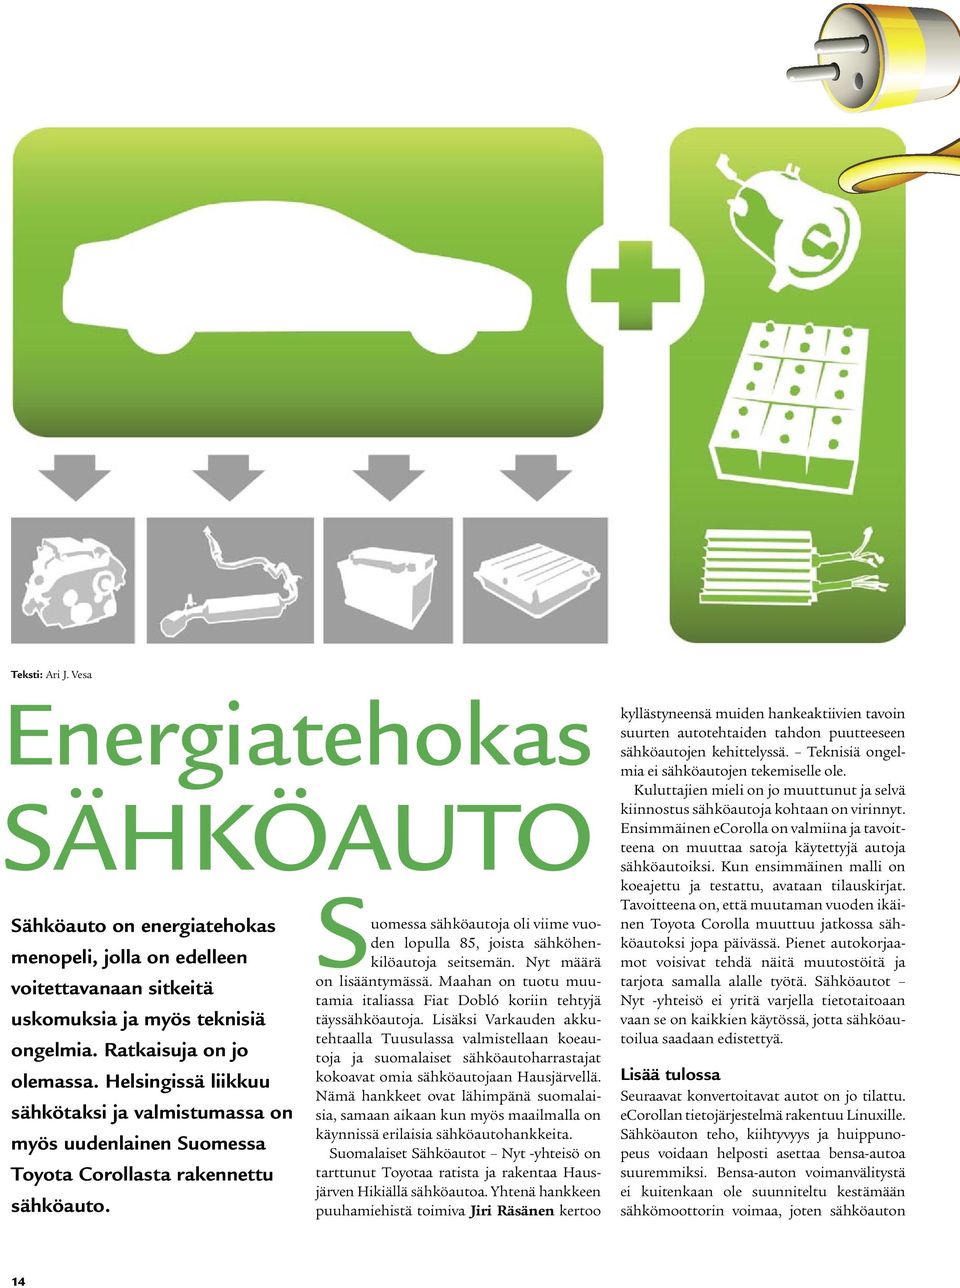 Suomessa sähköautoja oli viime vuoden lopulla 85, joista sähköhenkilöautoja seitsemän. Nyt määrä on lisääntymässä. Maahan on tuotu muutamia italiassa Fiat Dobló koriin tehtyjä täyssähköautoja.